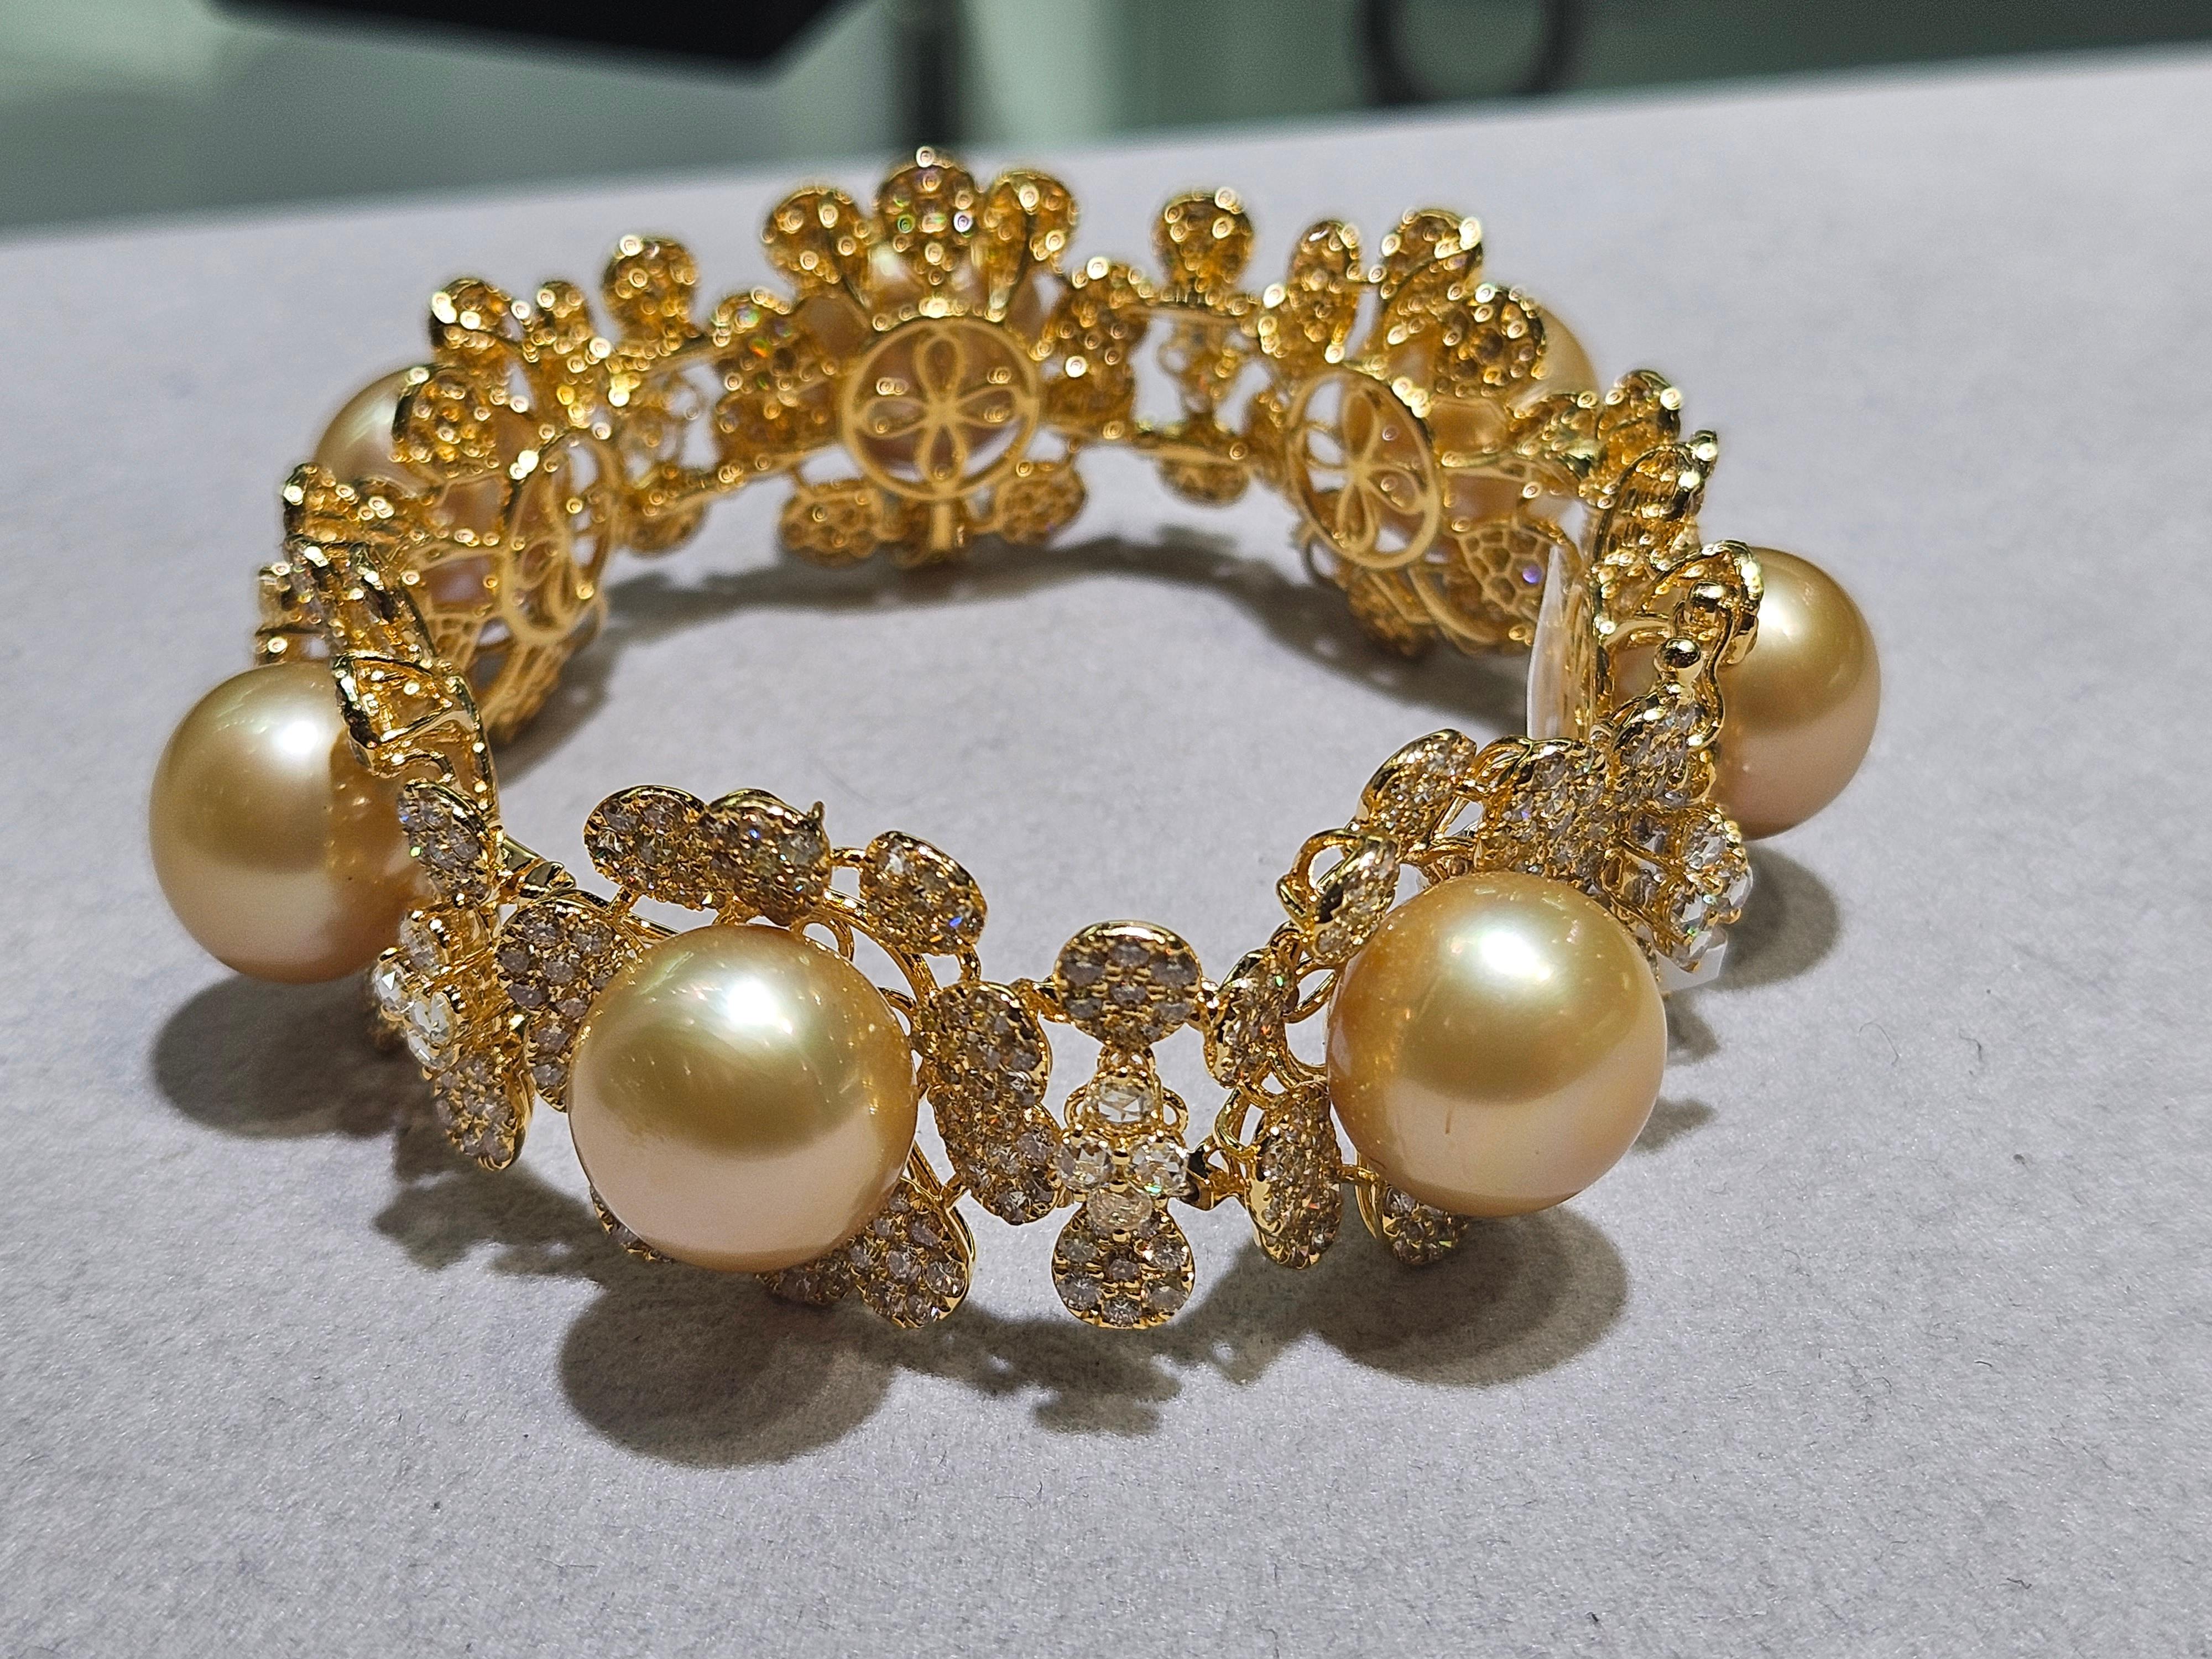 Das folgende Element, das wir anbieten, ist dieses schöne seltene wichtige 18KT Gold Fancy große goldene Perle und Fancy Rose Yellow Diamond Bracelet. Armbänder  besteht aus 7 wunderschönen, prächtigen, hochglänzenden großen AA-AAA GOLDEN PRISTINE